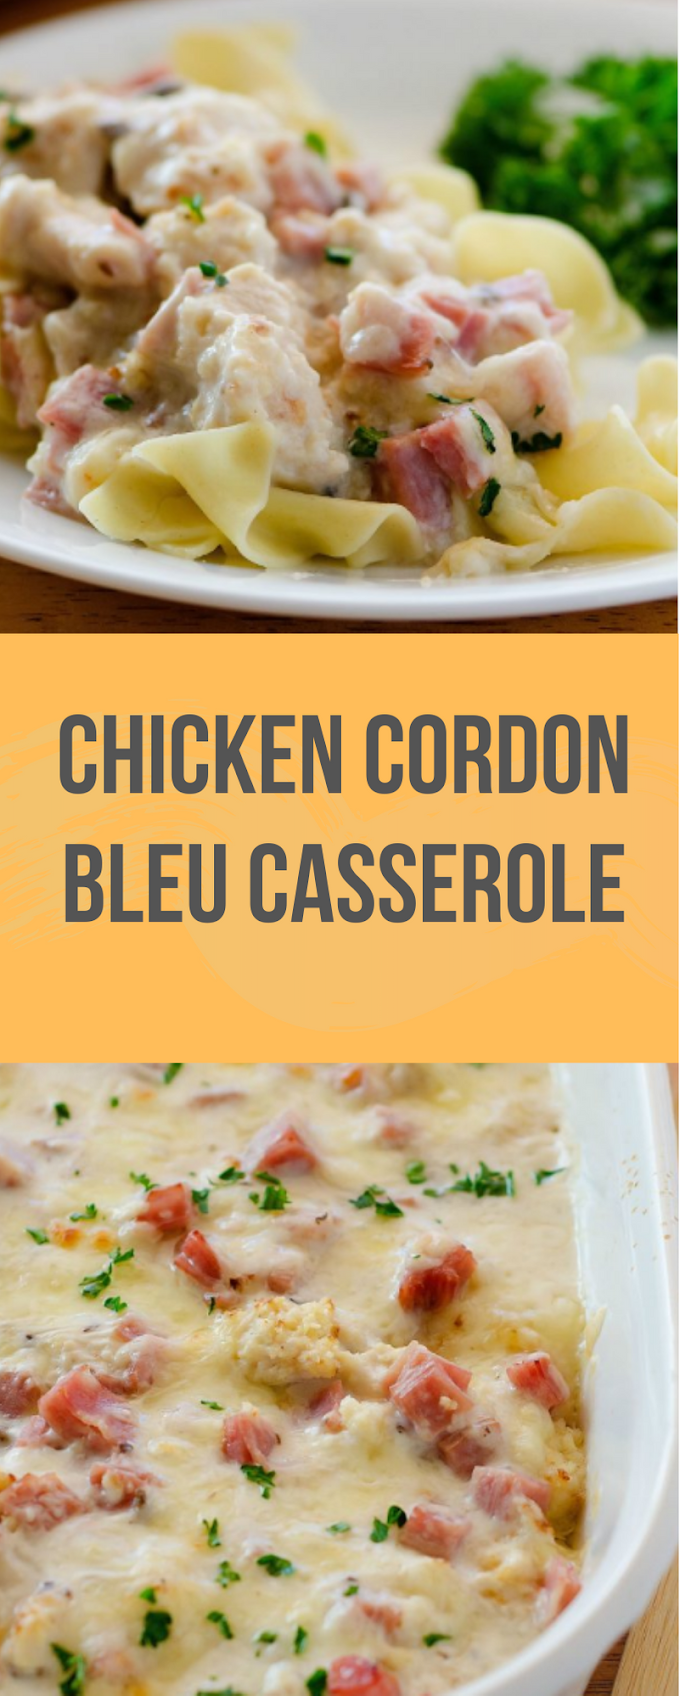  Chicken Cordon Bleu Casserole